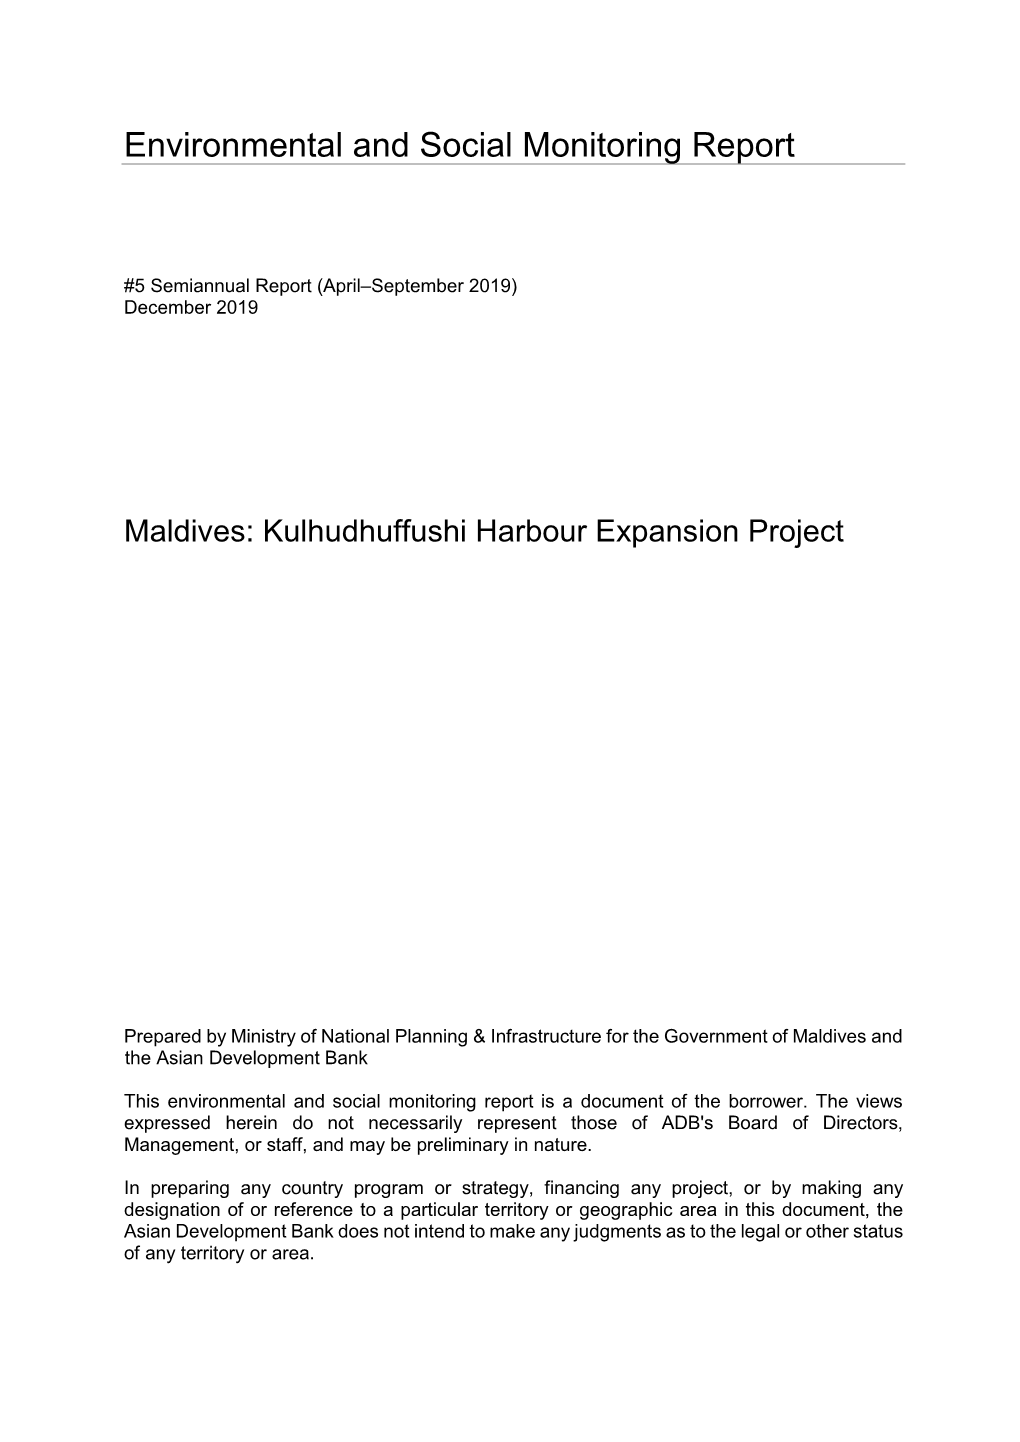 36111-013: Kulhudhuffushi Harbor Expansion Project